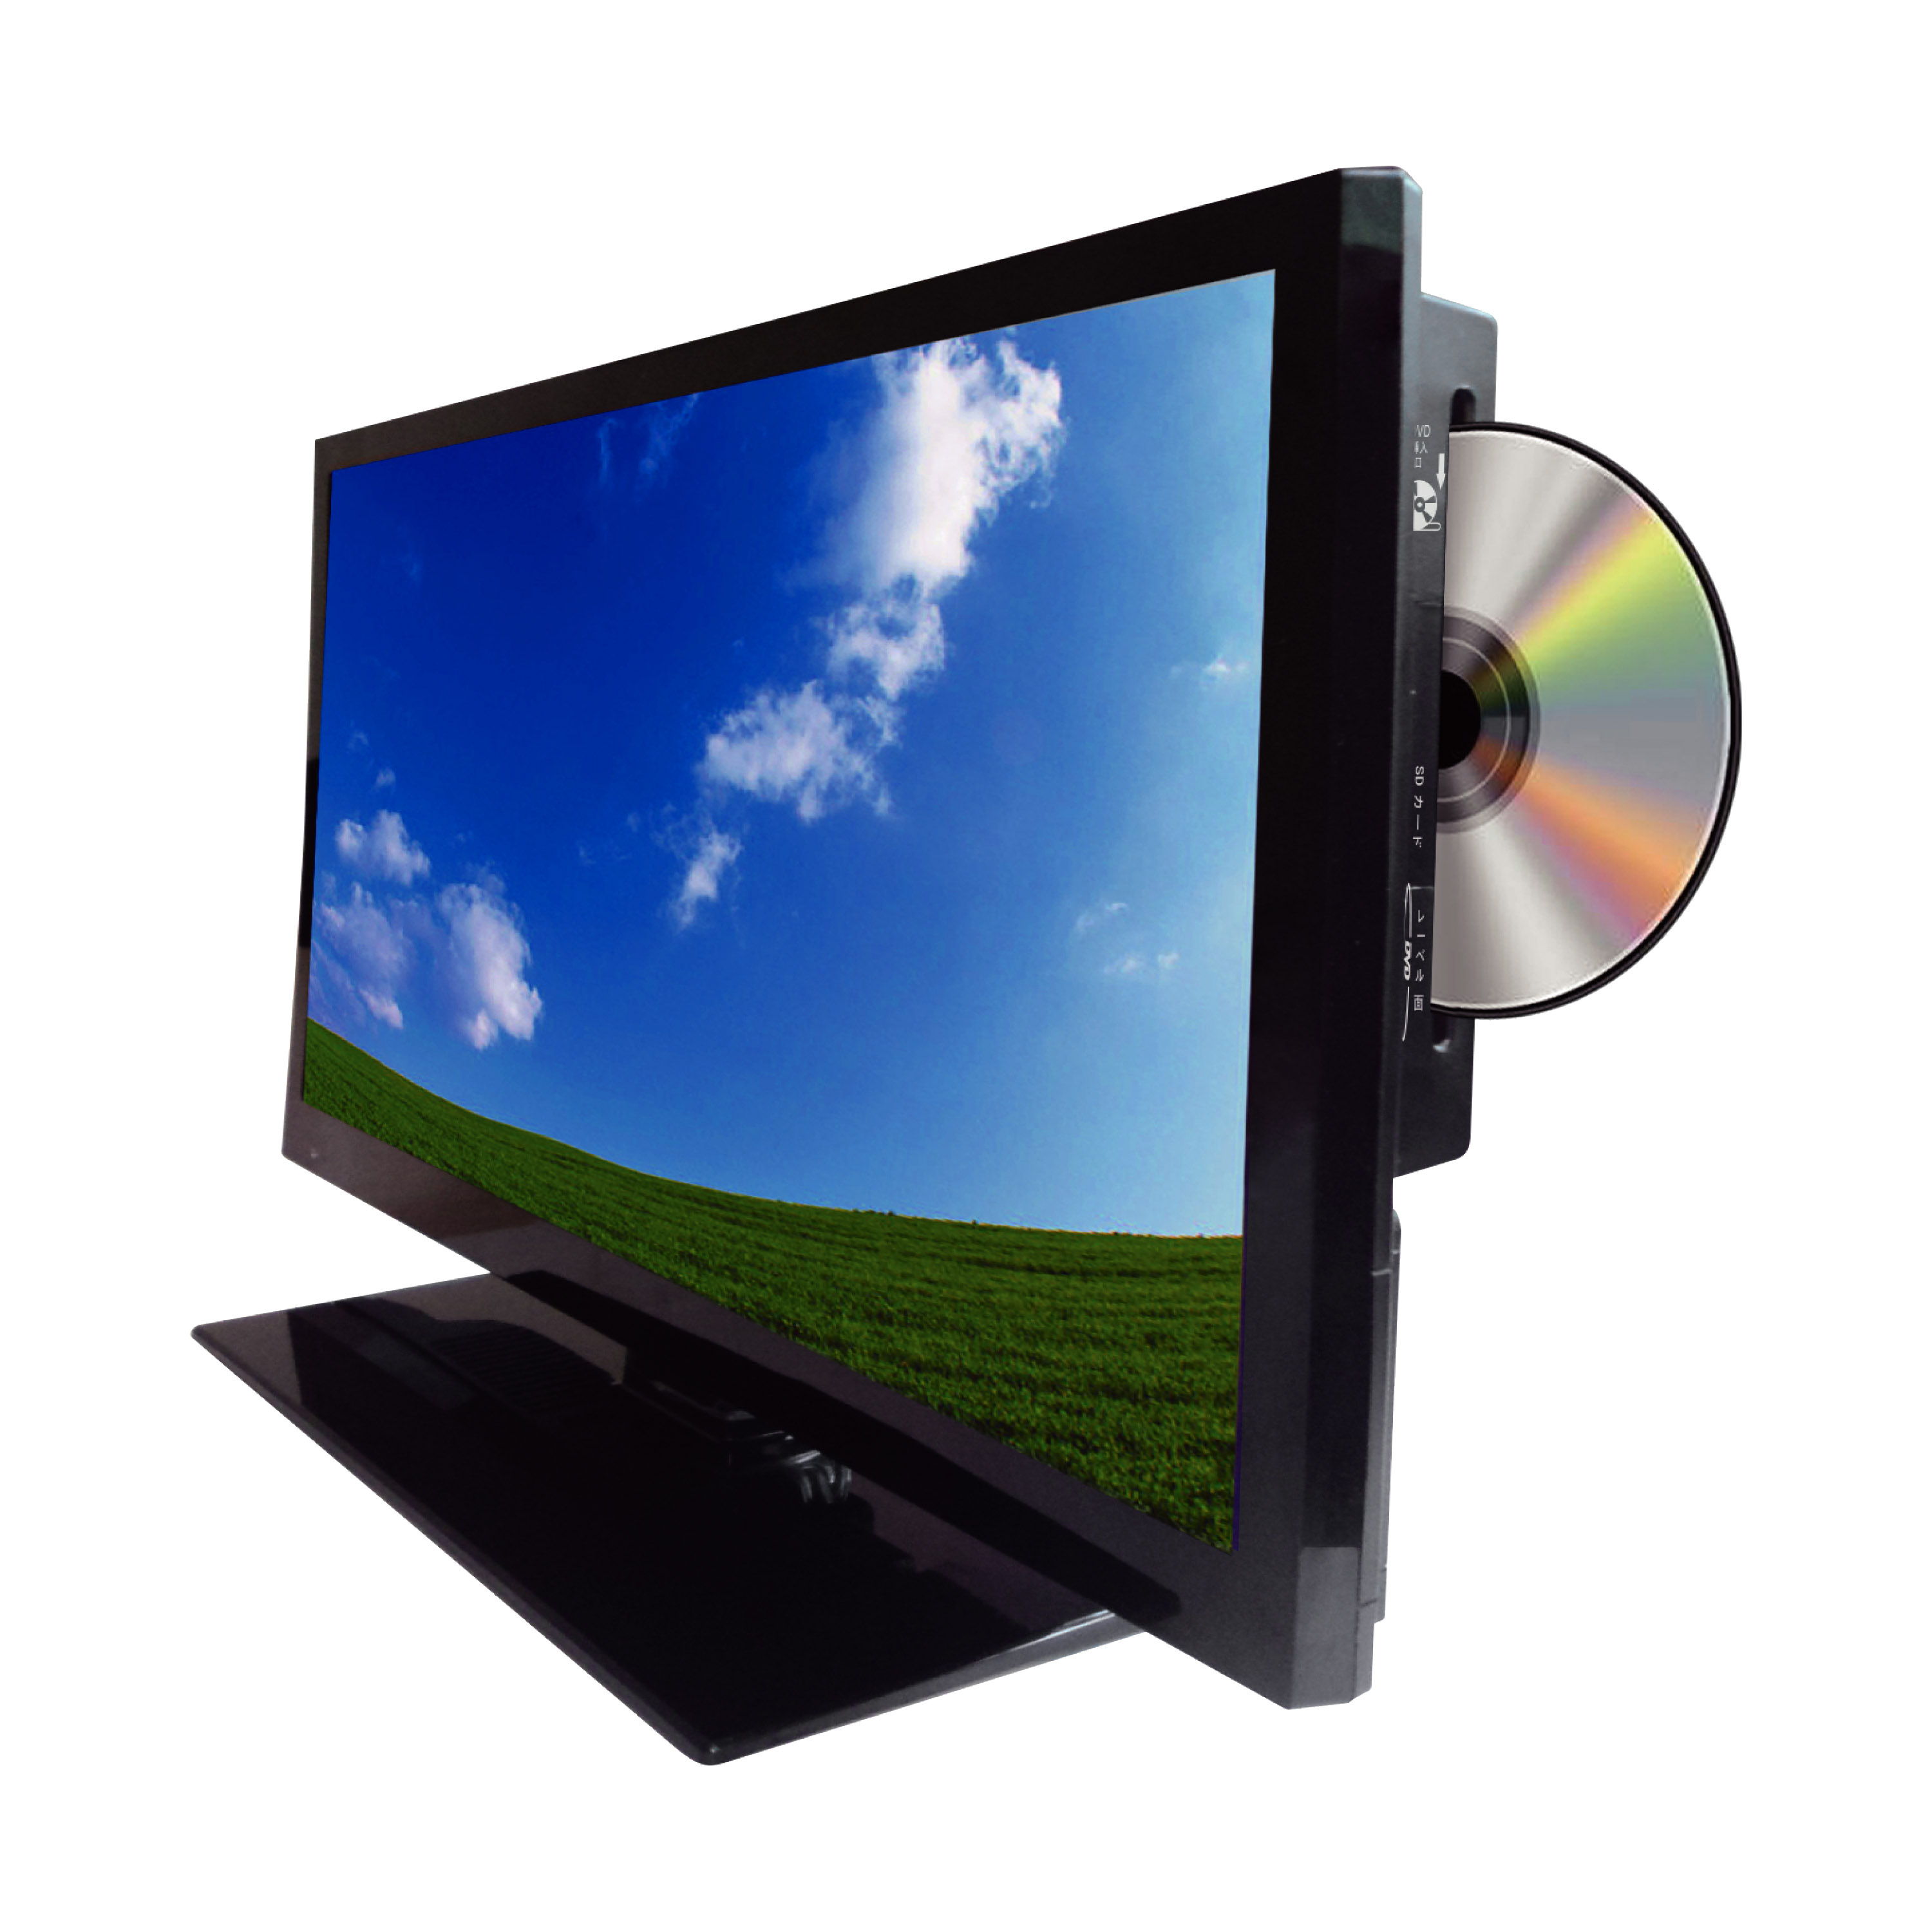 DVD一体型でコンパクトに使える「ROOMMATE 19インチDVD内蔵ハイビジョンLEDテレビ EB-RM19DTV」を発売開始